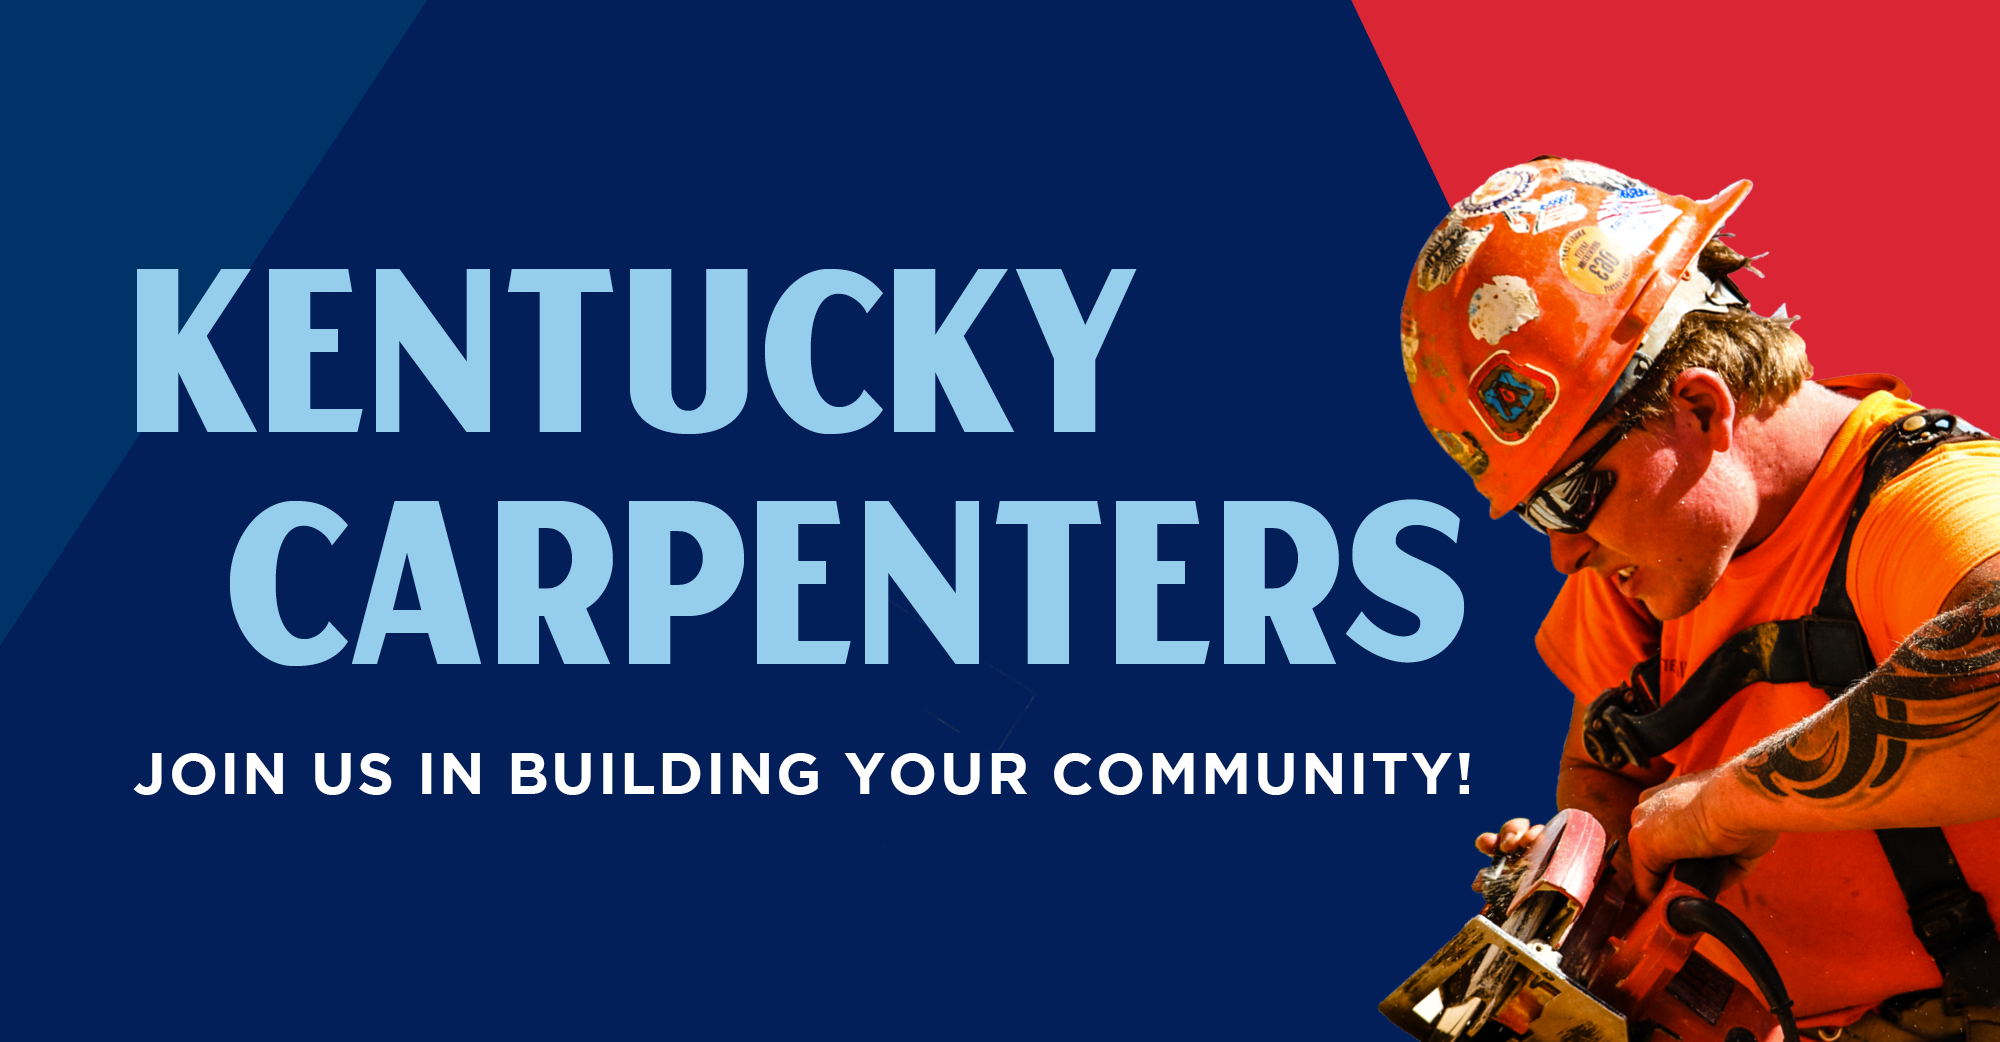 Kentucky Carpenters